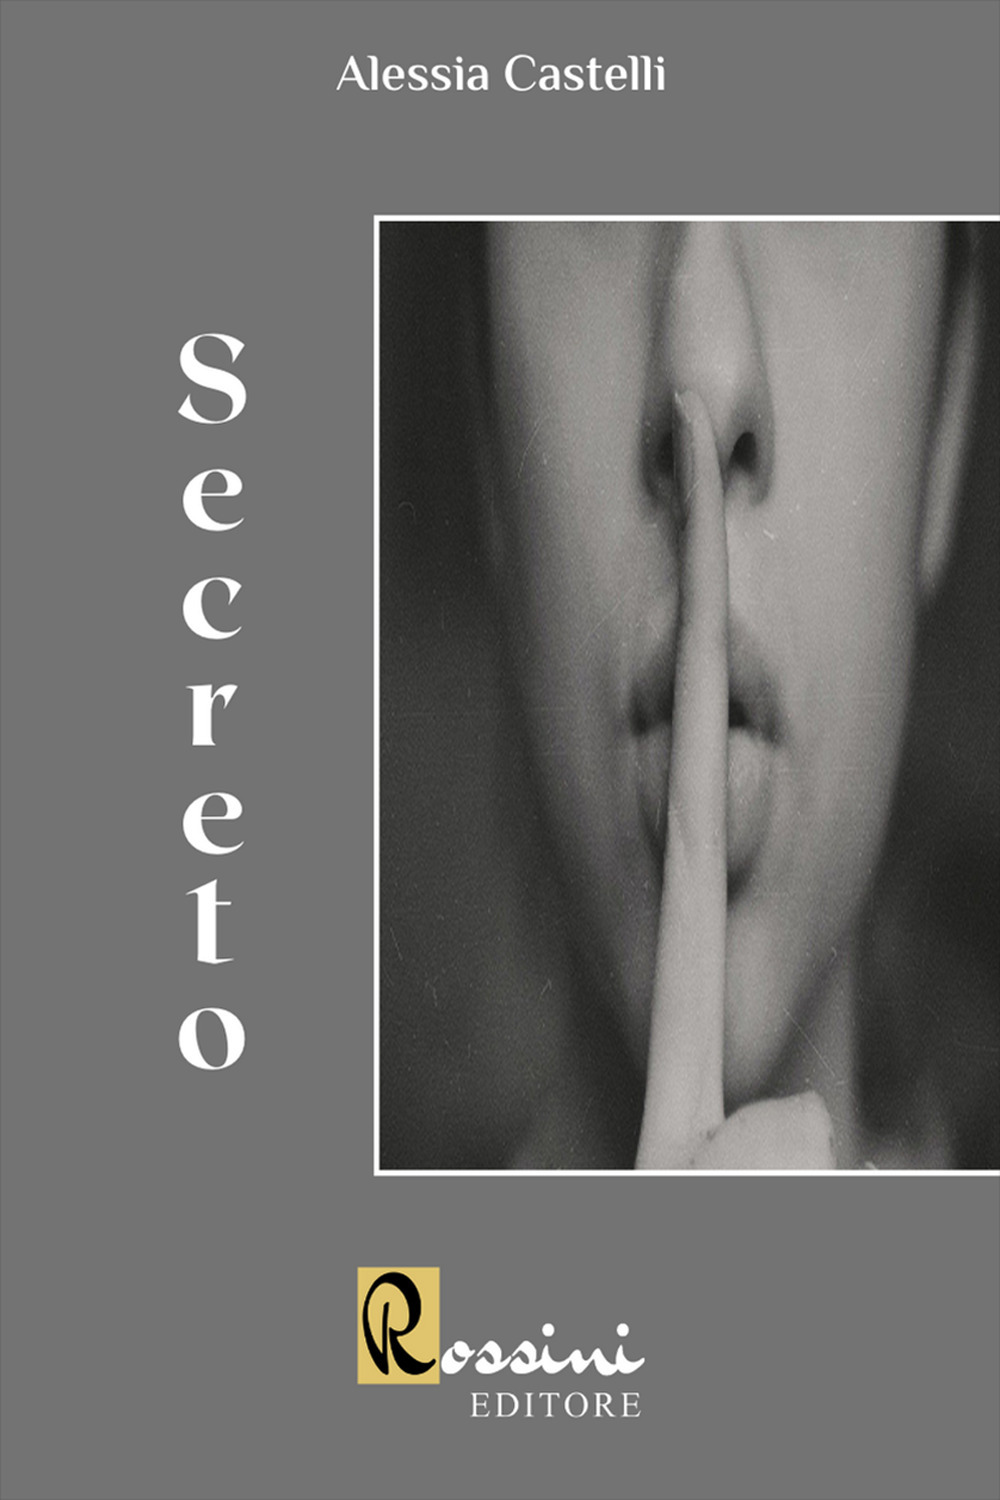 Libri Castelli Alessia - Secreto NUOVO SIGILLATO, EDIZIONE DEL 11/03/2022 SUBITO DISPONIBILE